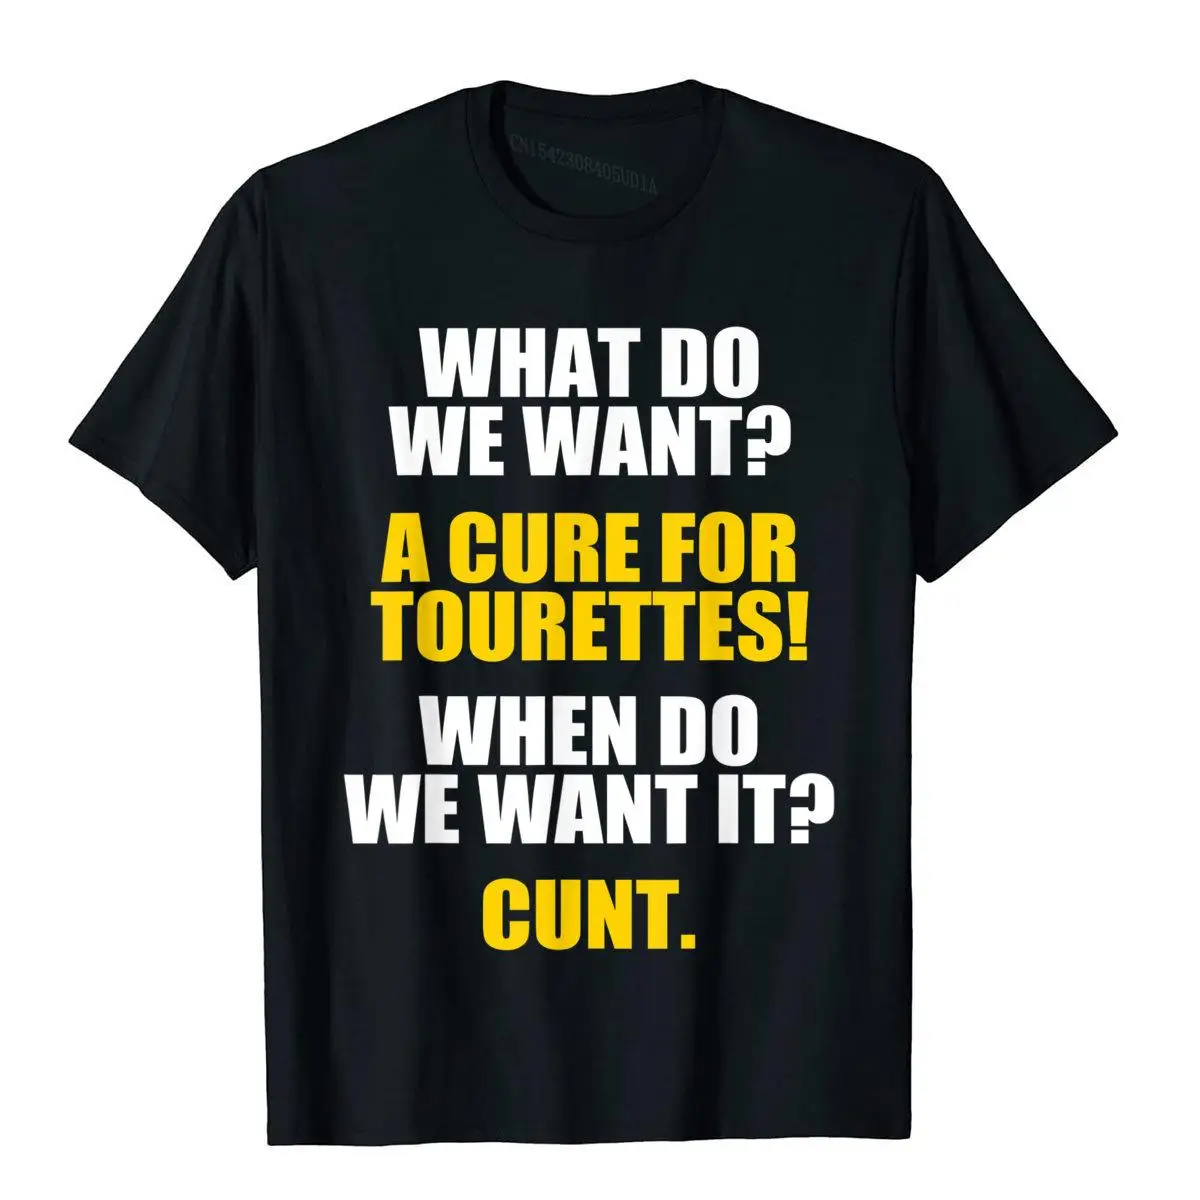 

Забавная Мужская футболка с надписью «What Do We Want A Cure For Tourettes», хлопковая Футболка с смешным юмором для взрослых, новинка, топы, рубашка в стиле...